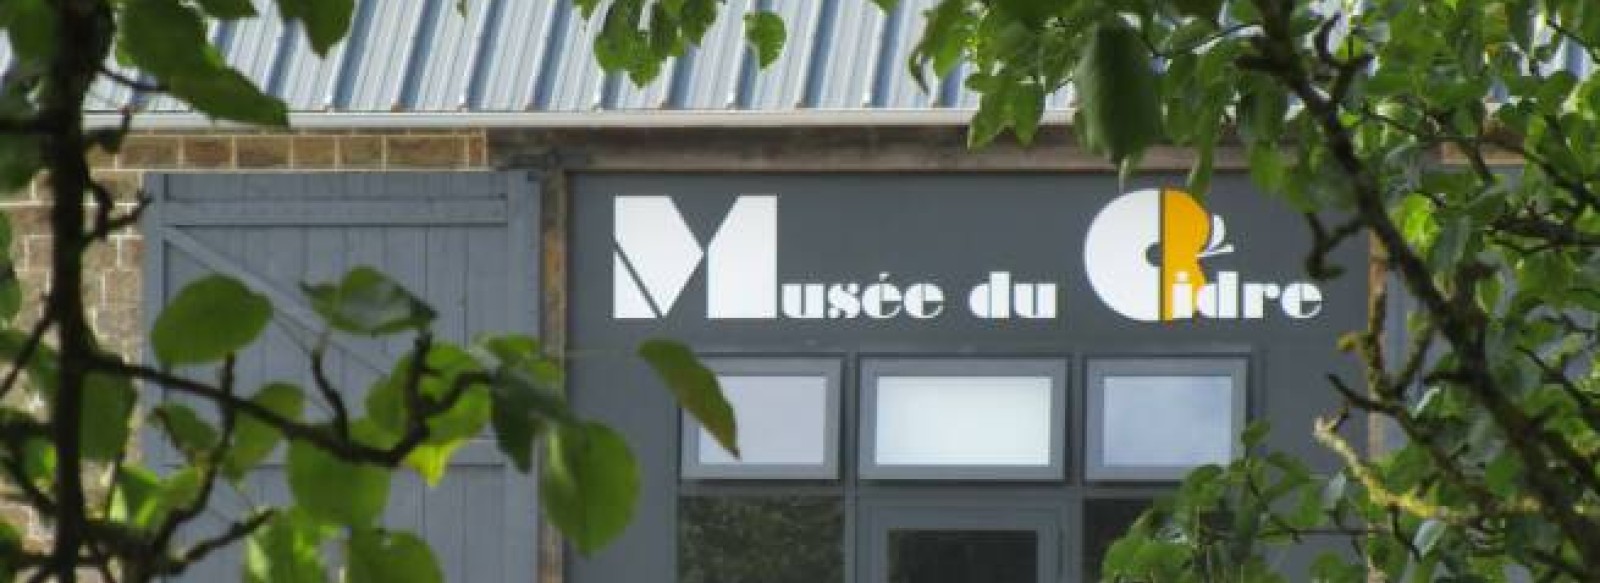 AIRE DE STATIONNEMENT MUSEE DU CIDRE